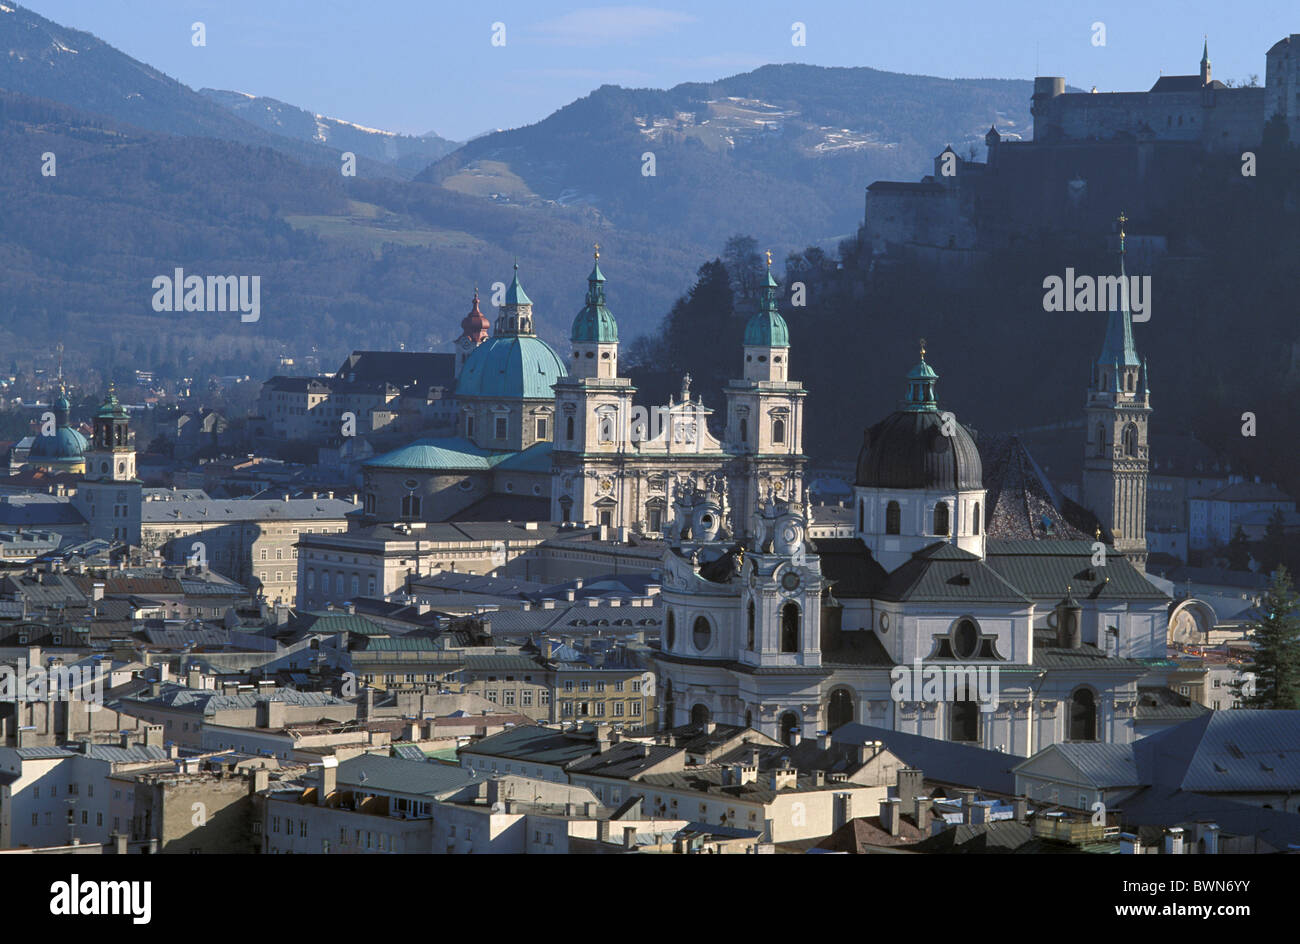 Austria Europa Salzburg sito patrimonio mondiale dell'UNESCO città panoramica della città elevato angolo di tetti chiese Salzburgerl Foto Stock